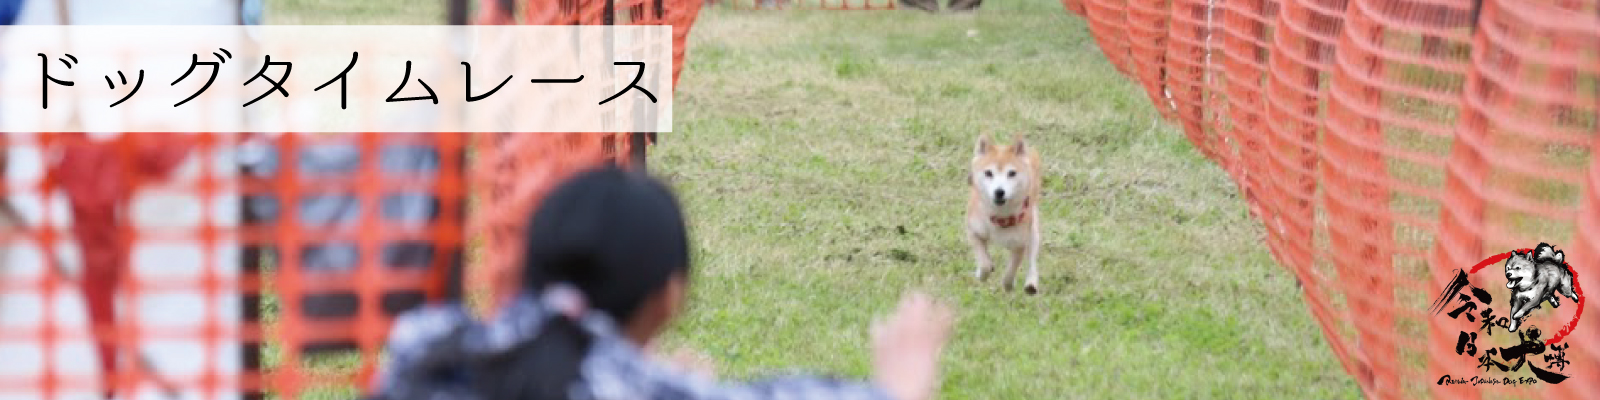 ドッグタイムレース 令和日本犬博公式サイト